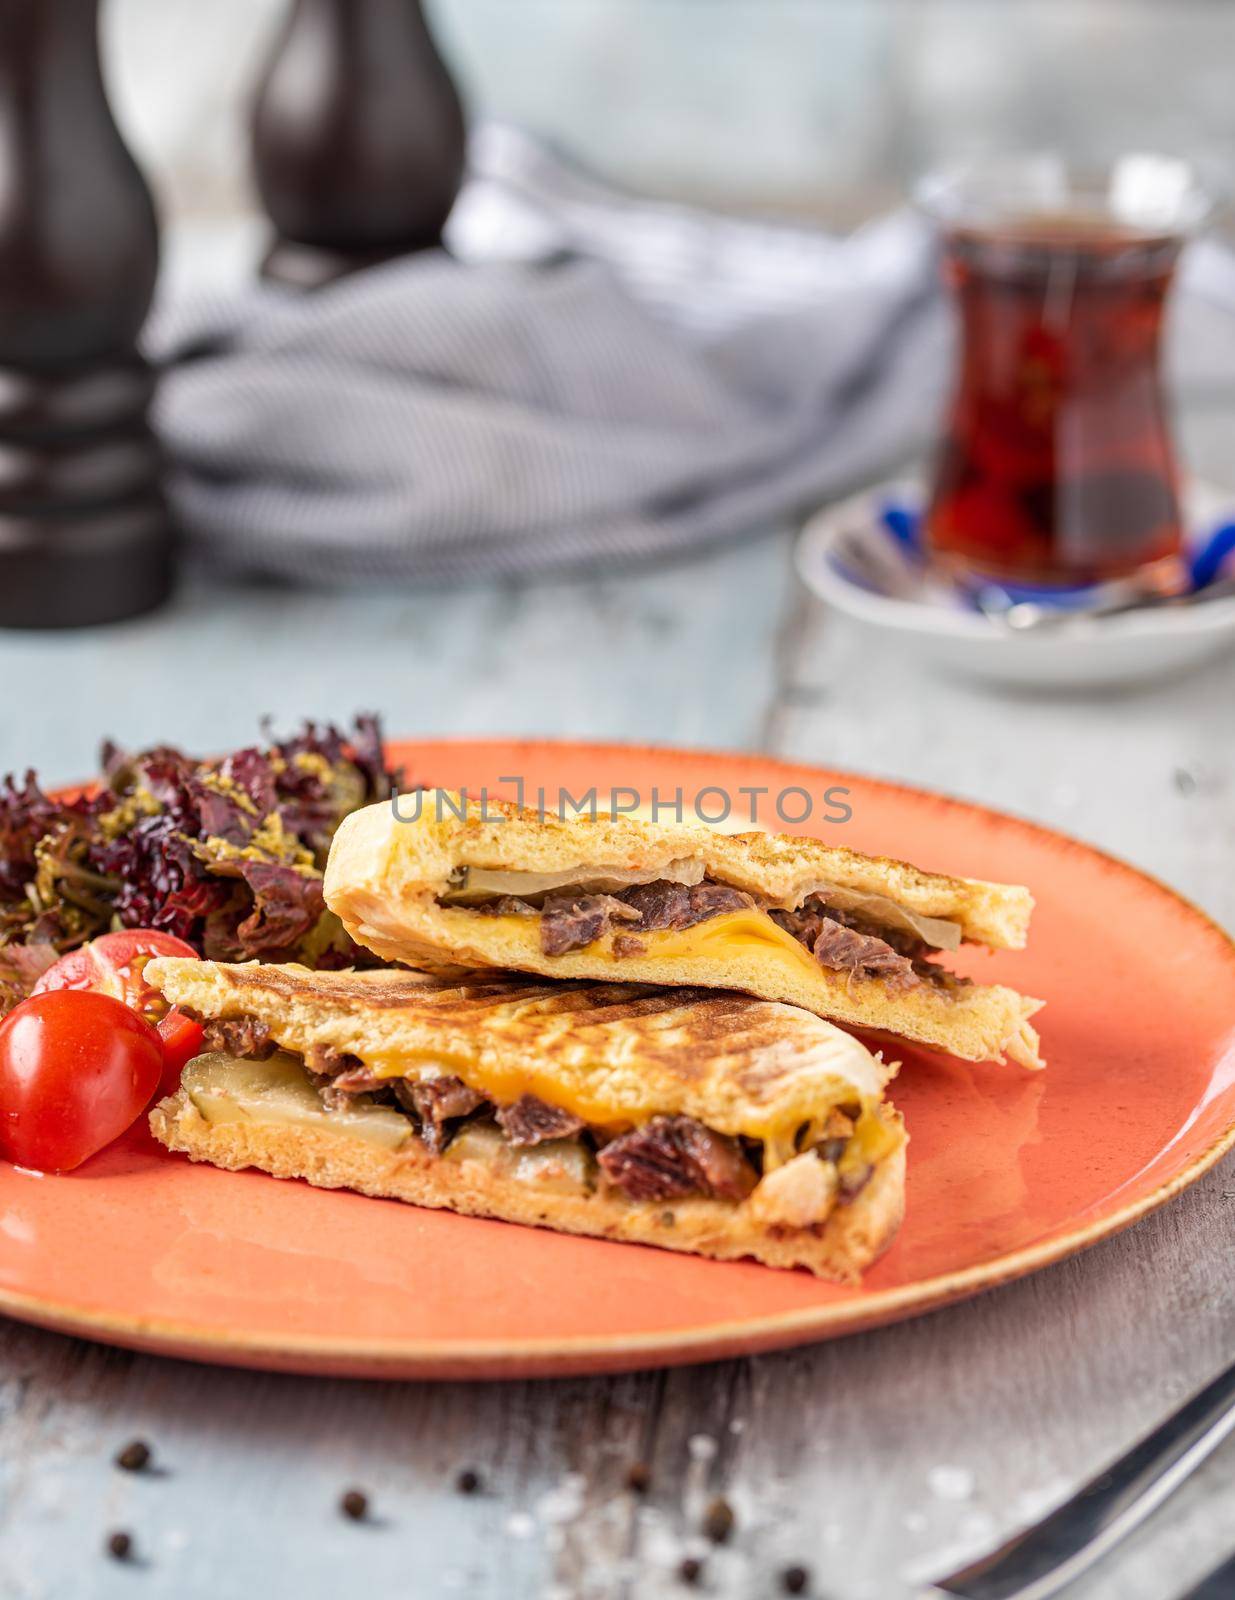 Turkish toast with roasted meat served with turkish black tea